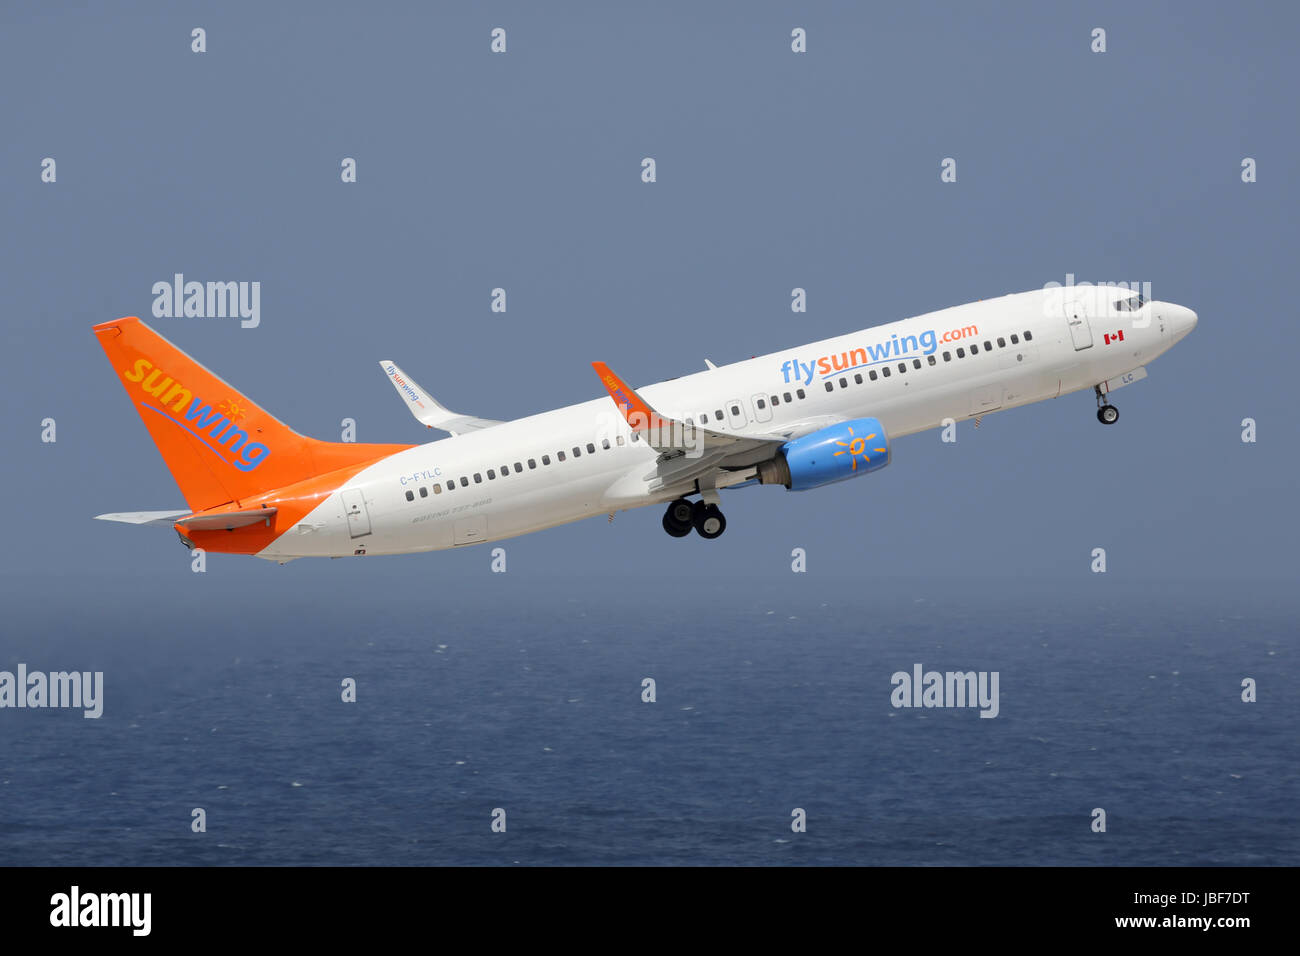 Curacao - 16. Februar 2014: Eine Boeing 737-800 der Sunwing mit der Kennung C-FYLC startet vom Flughafen von Curacao (CUR). Sunwing ist eine kanadische Fluggesellschaft mit Sitz in Toronto. Sie betreibt 33 Flugzeuge. Stock Photo